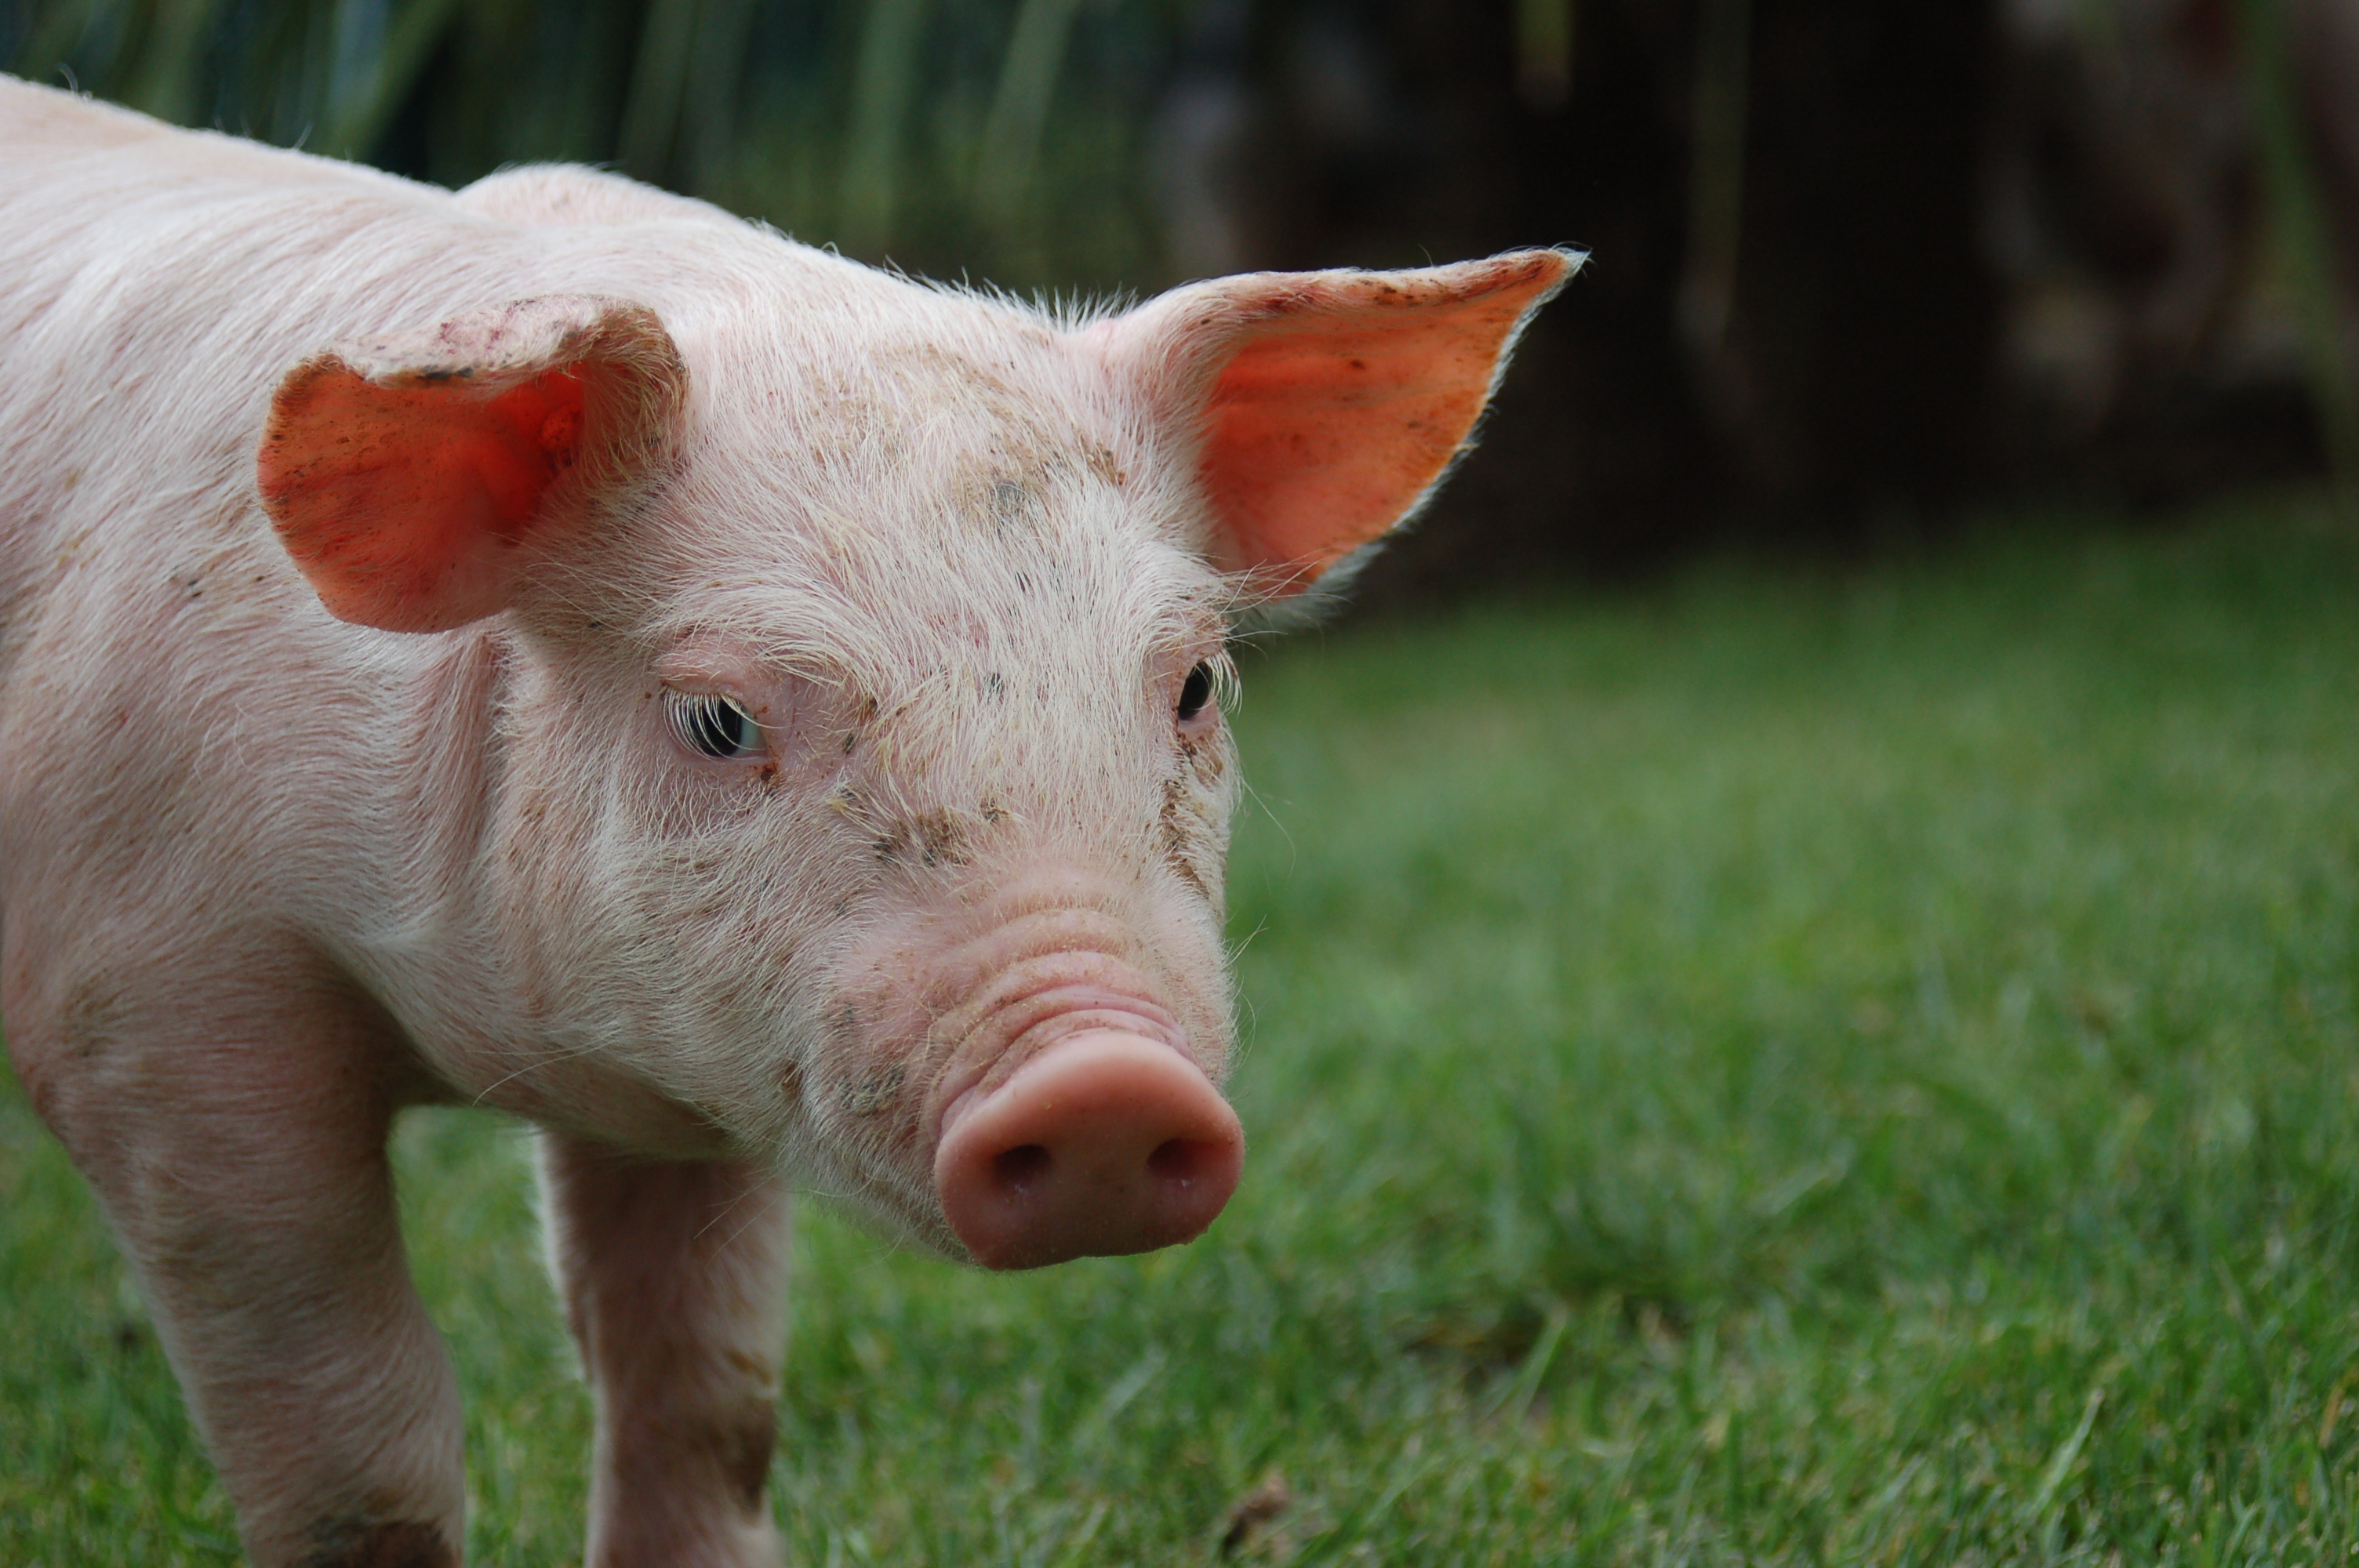 フリー画像動物写真哺乳類豚/ブタ子豚画像素材なら！無料・フリー写真素材のフリーフォト